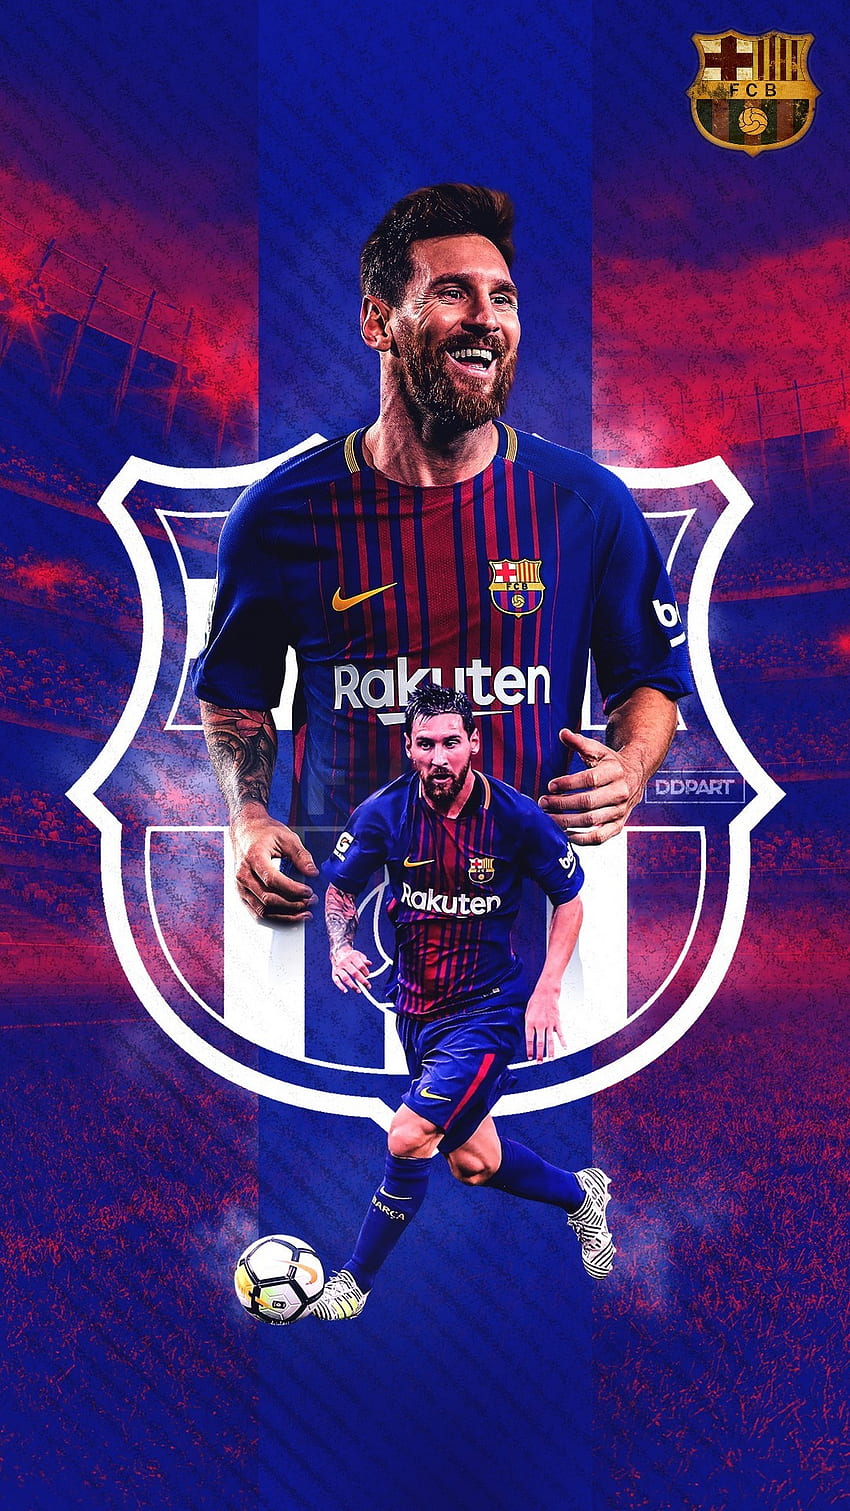 Nếu bạn đang tìm kiếm ảnh nền HD cho điện thoại của mình, hãy thử xem ảnh nền Leo Messi iPhone 8 . 2019 Football HD phone wallpaper trên Pxfuel. Bạn sẽ không thể cưỡng lại được vẻ đẹp của ngôi sao bóng đá này.